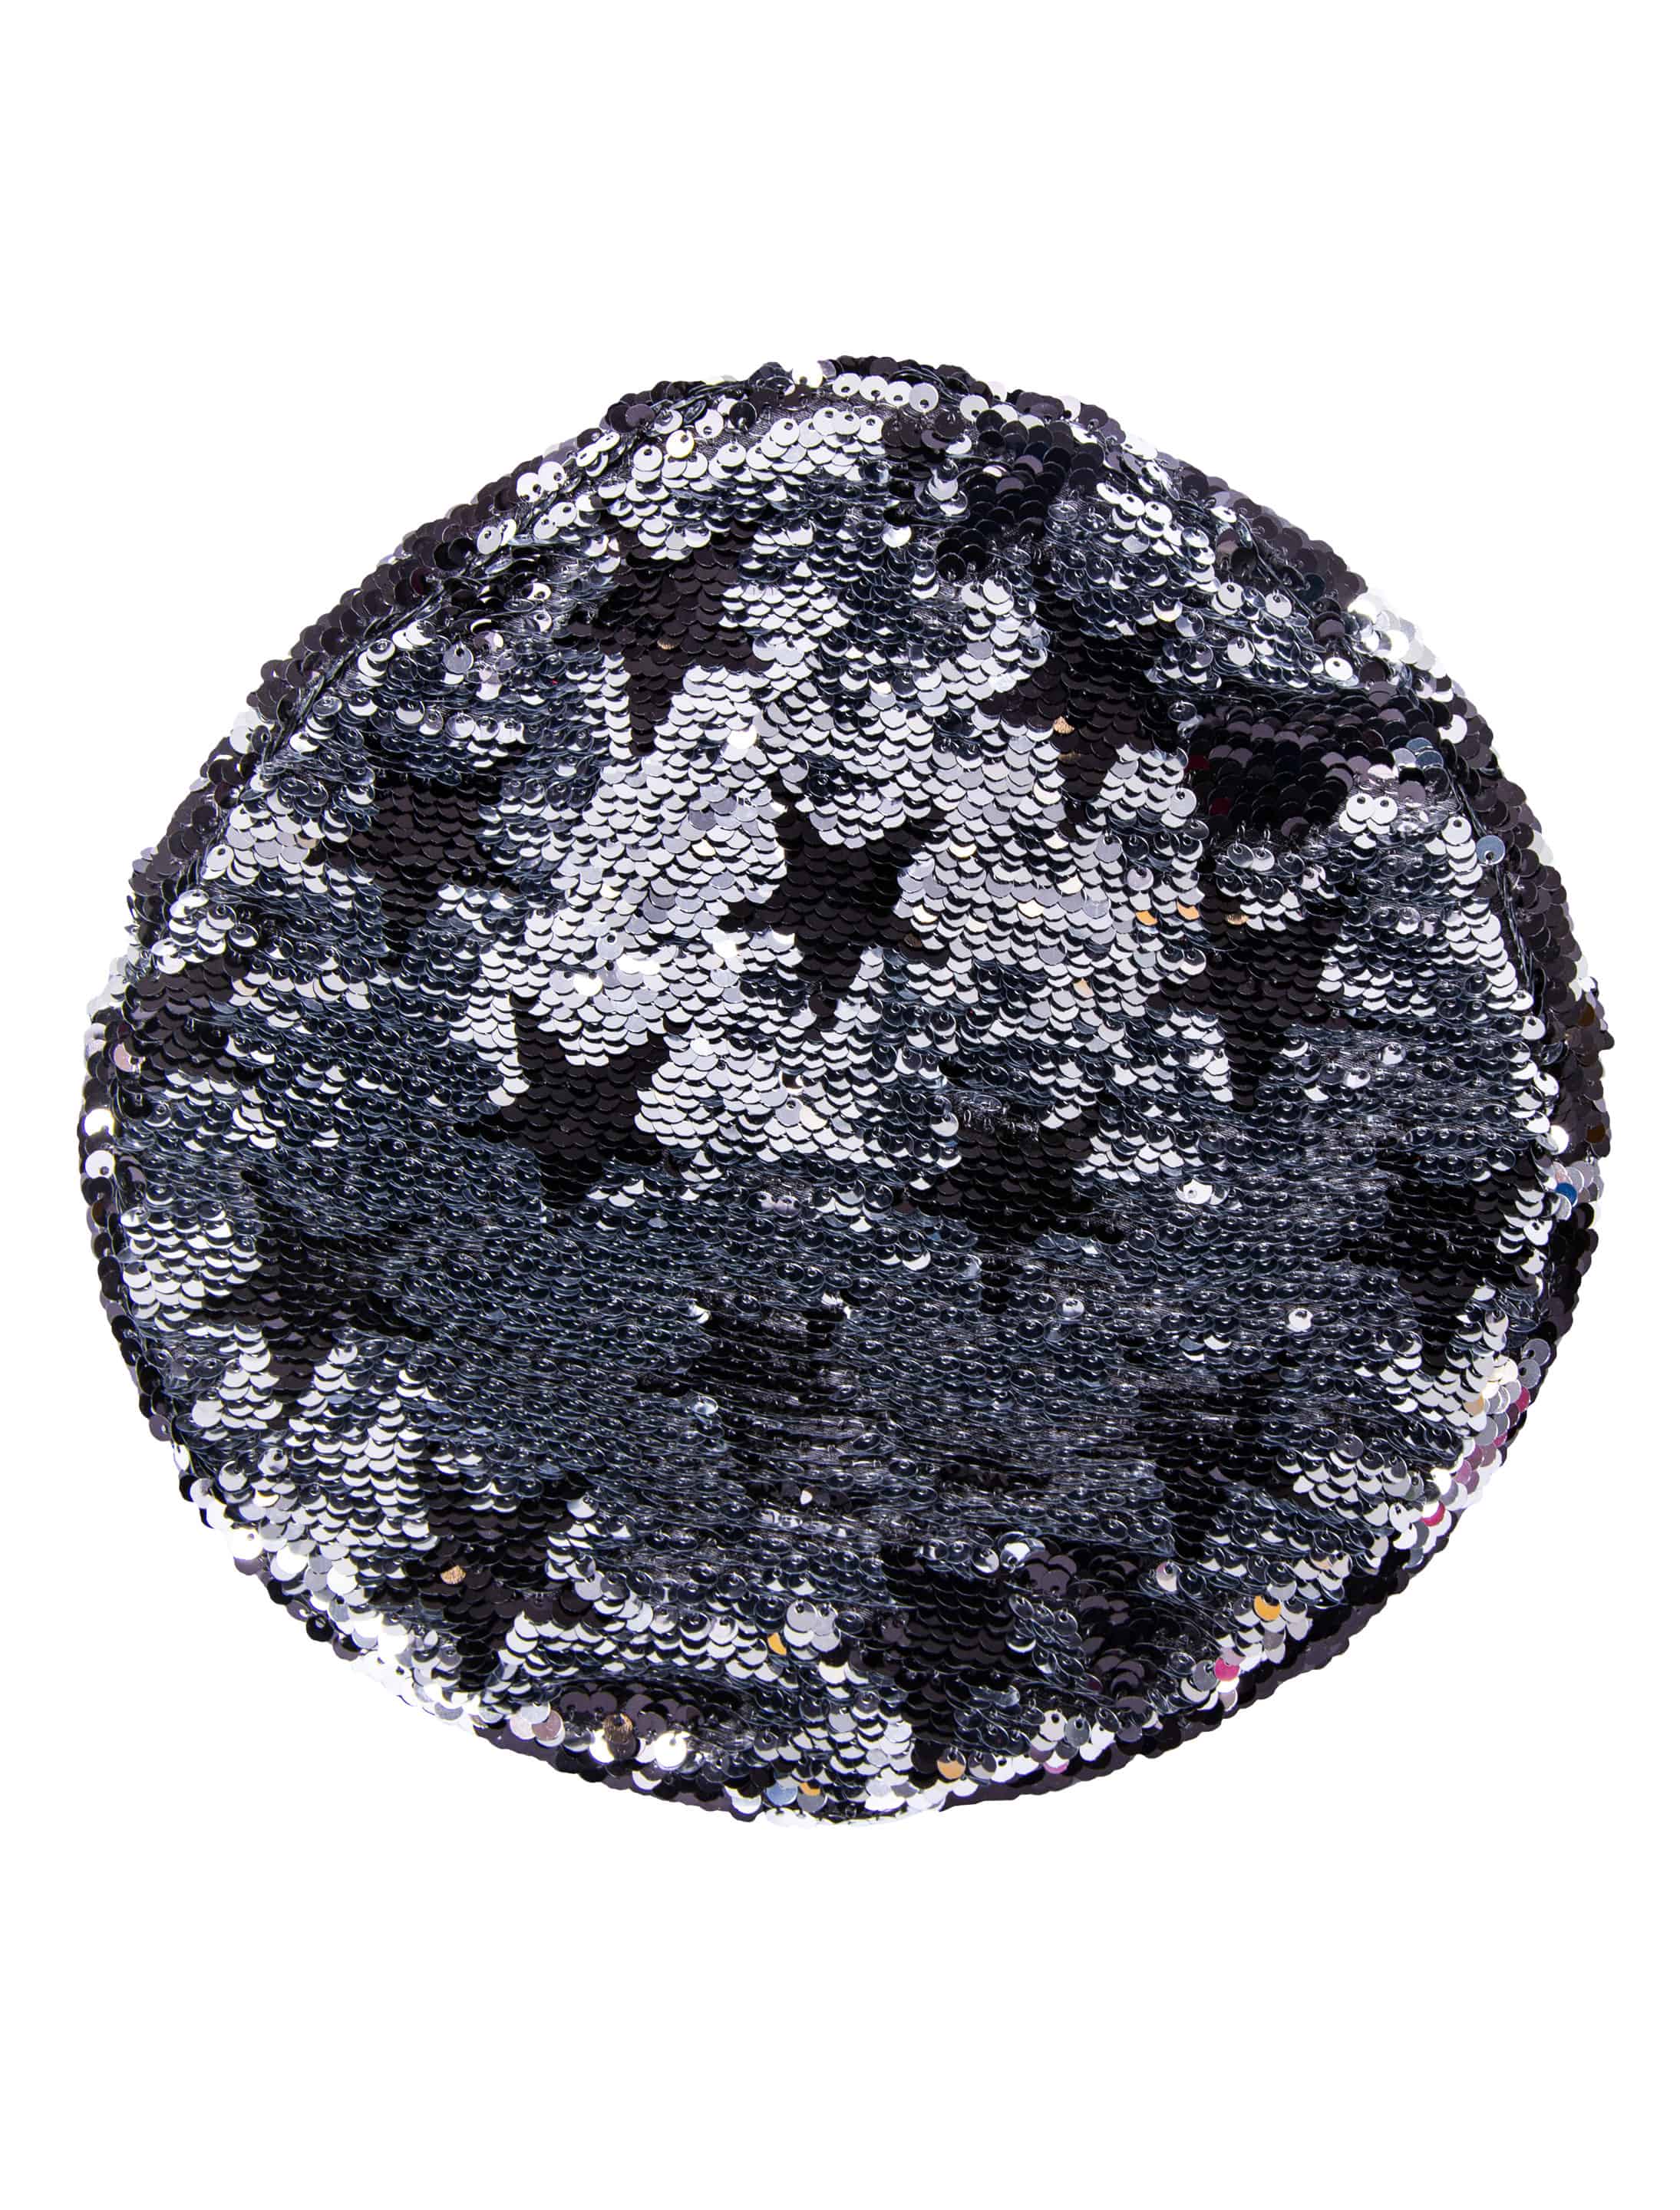 Paillettenhut mit silbernen Sternen schwarz/silber one size